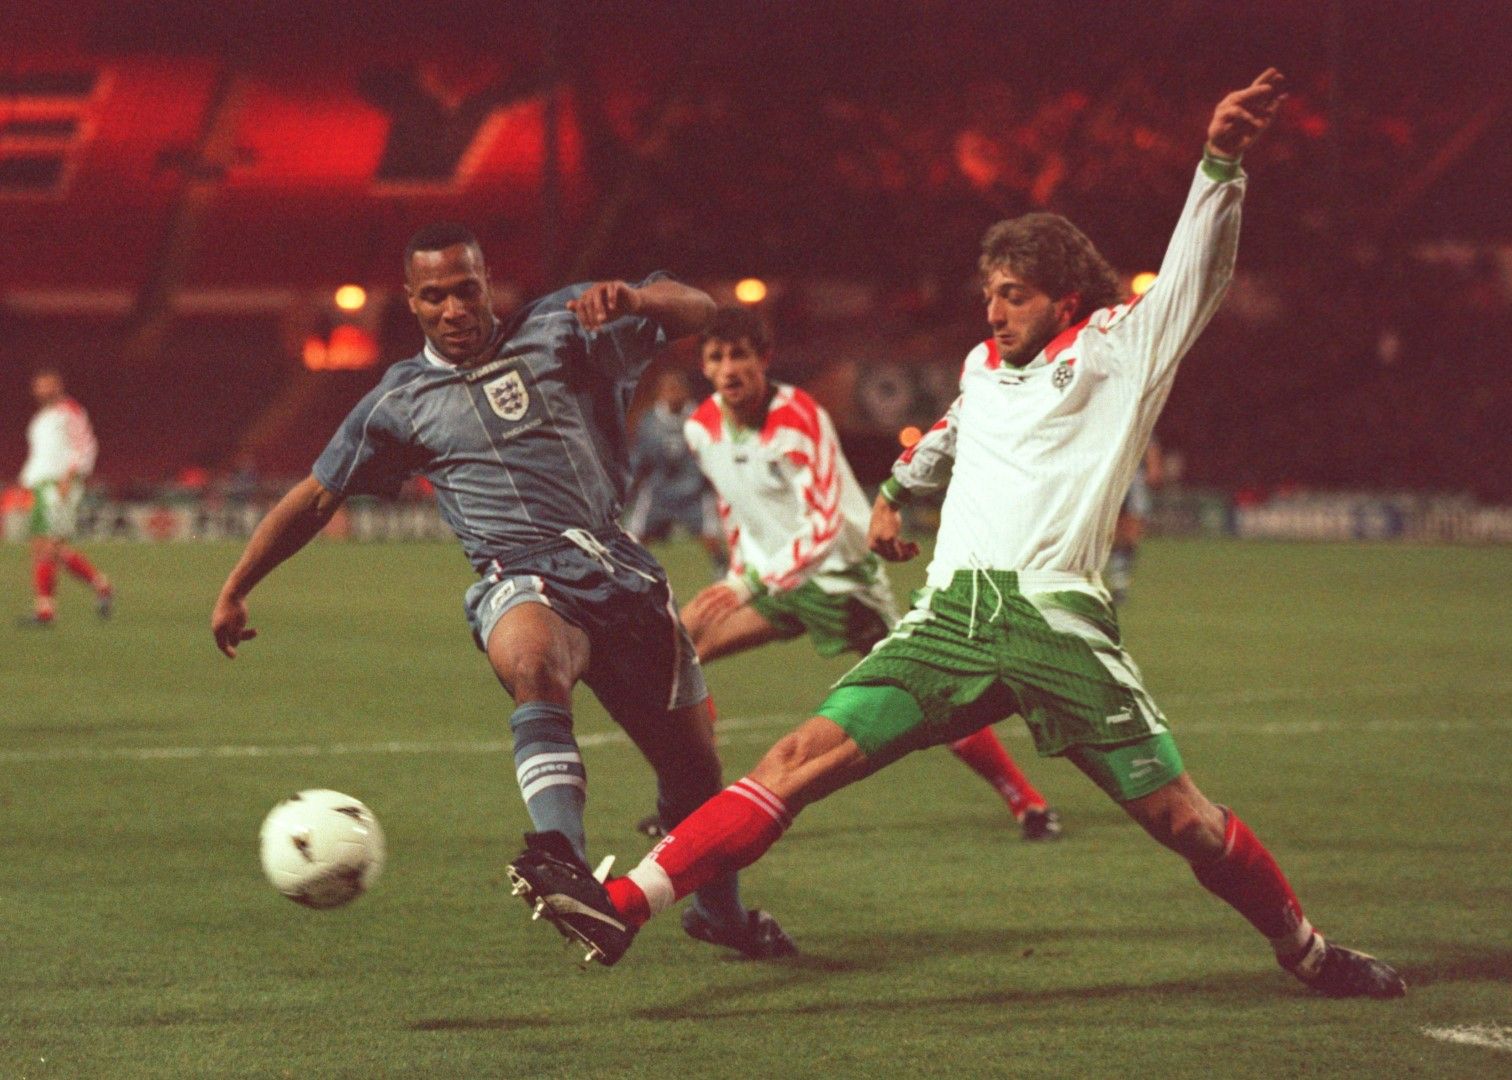 1996 г., 1:0 на "Уембли" - Лес Фърдинанд срещу Трифон Иванов